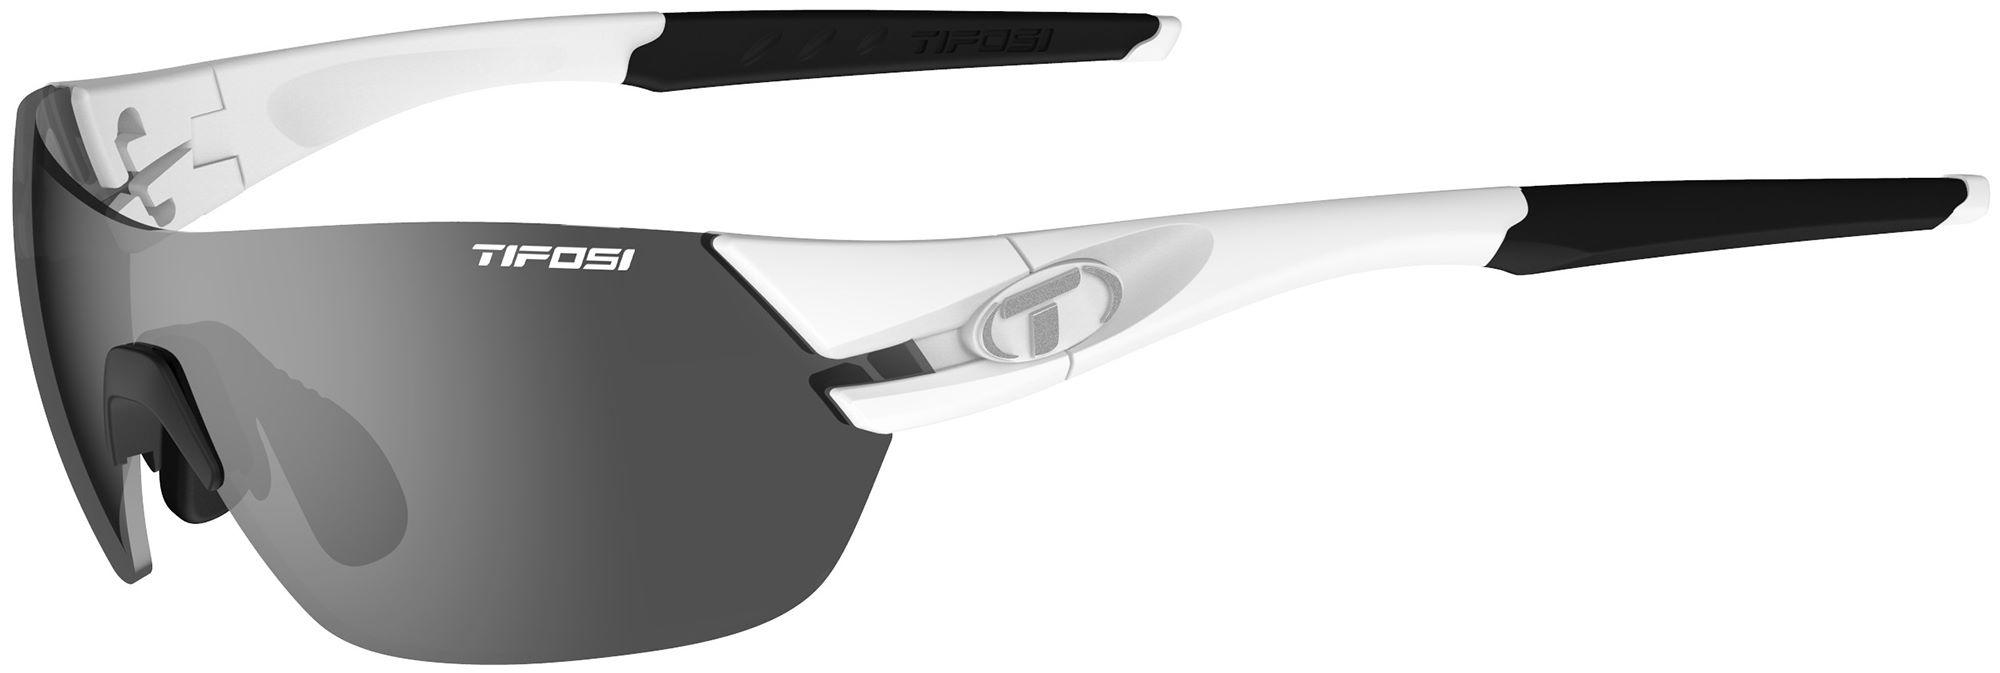 Tifosi Eyewear Slice Sunglasses (3 Lens) - Matte/white